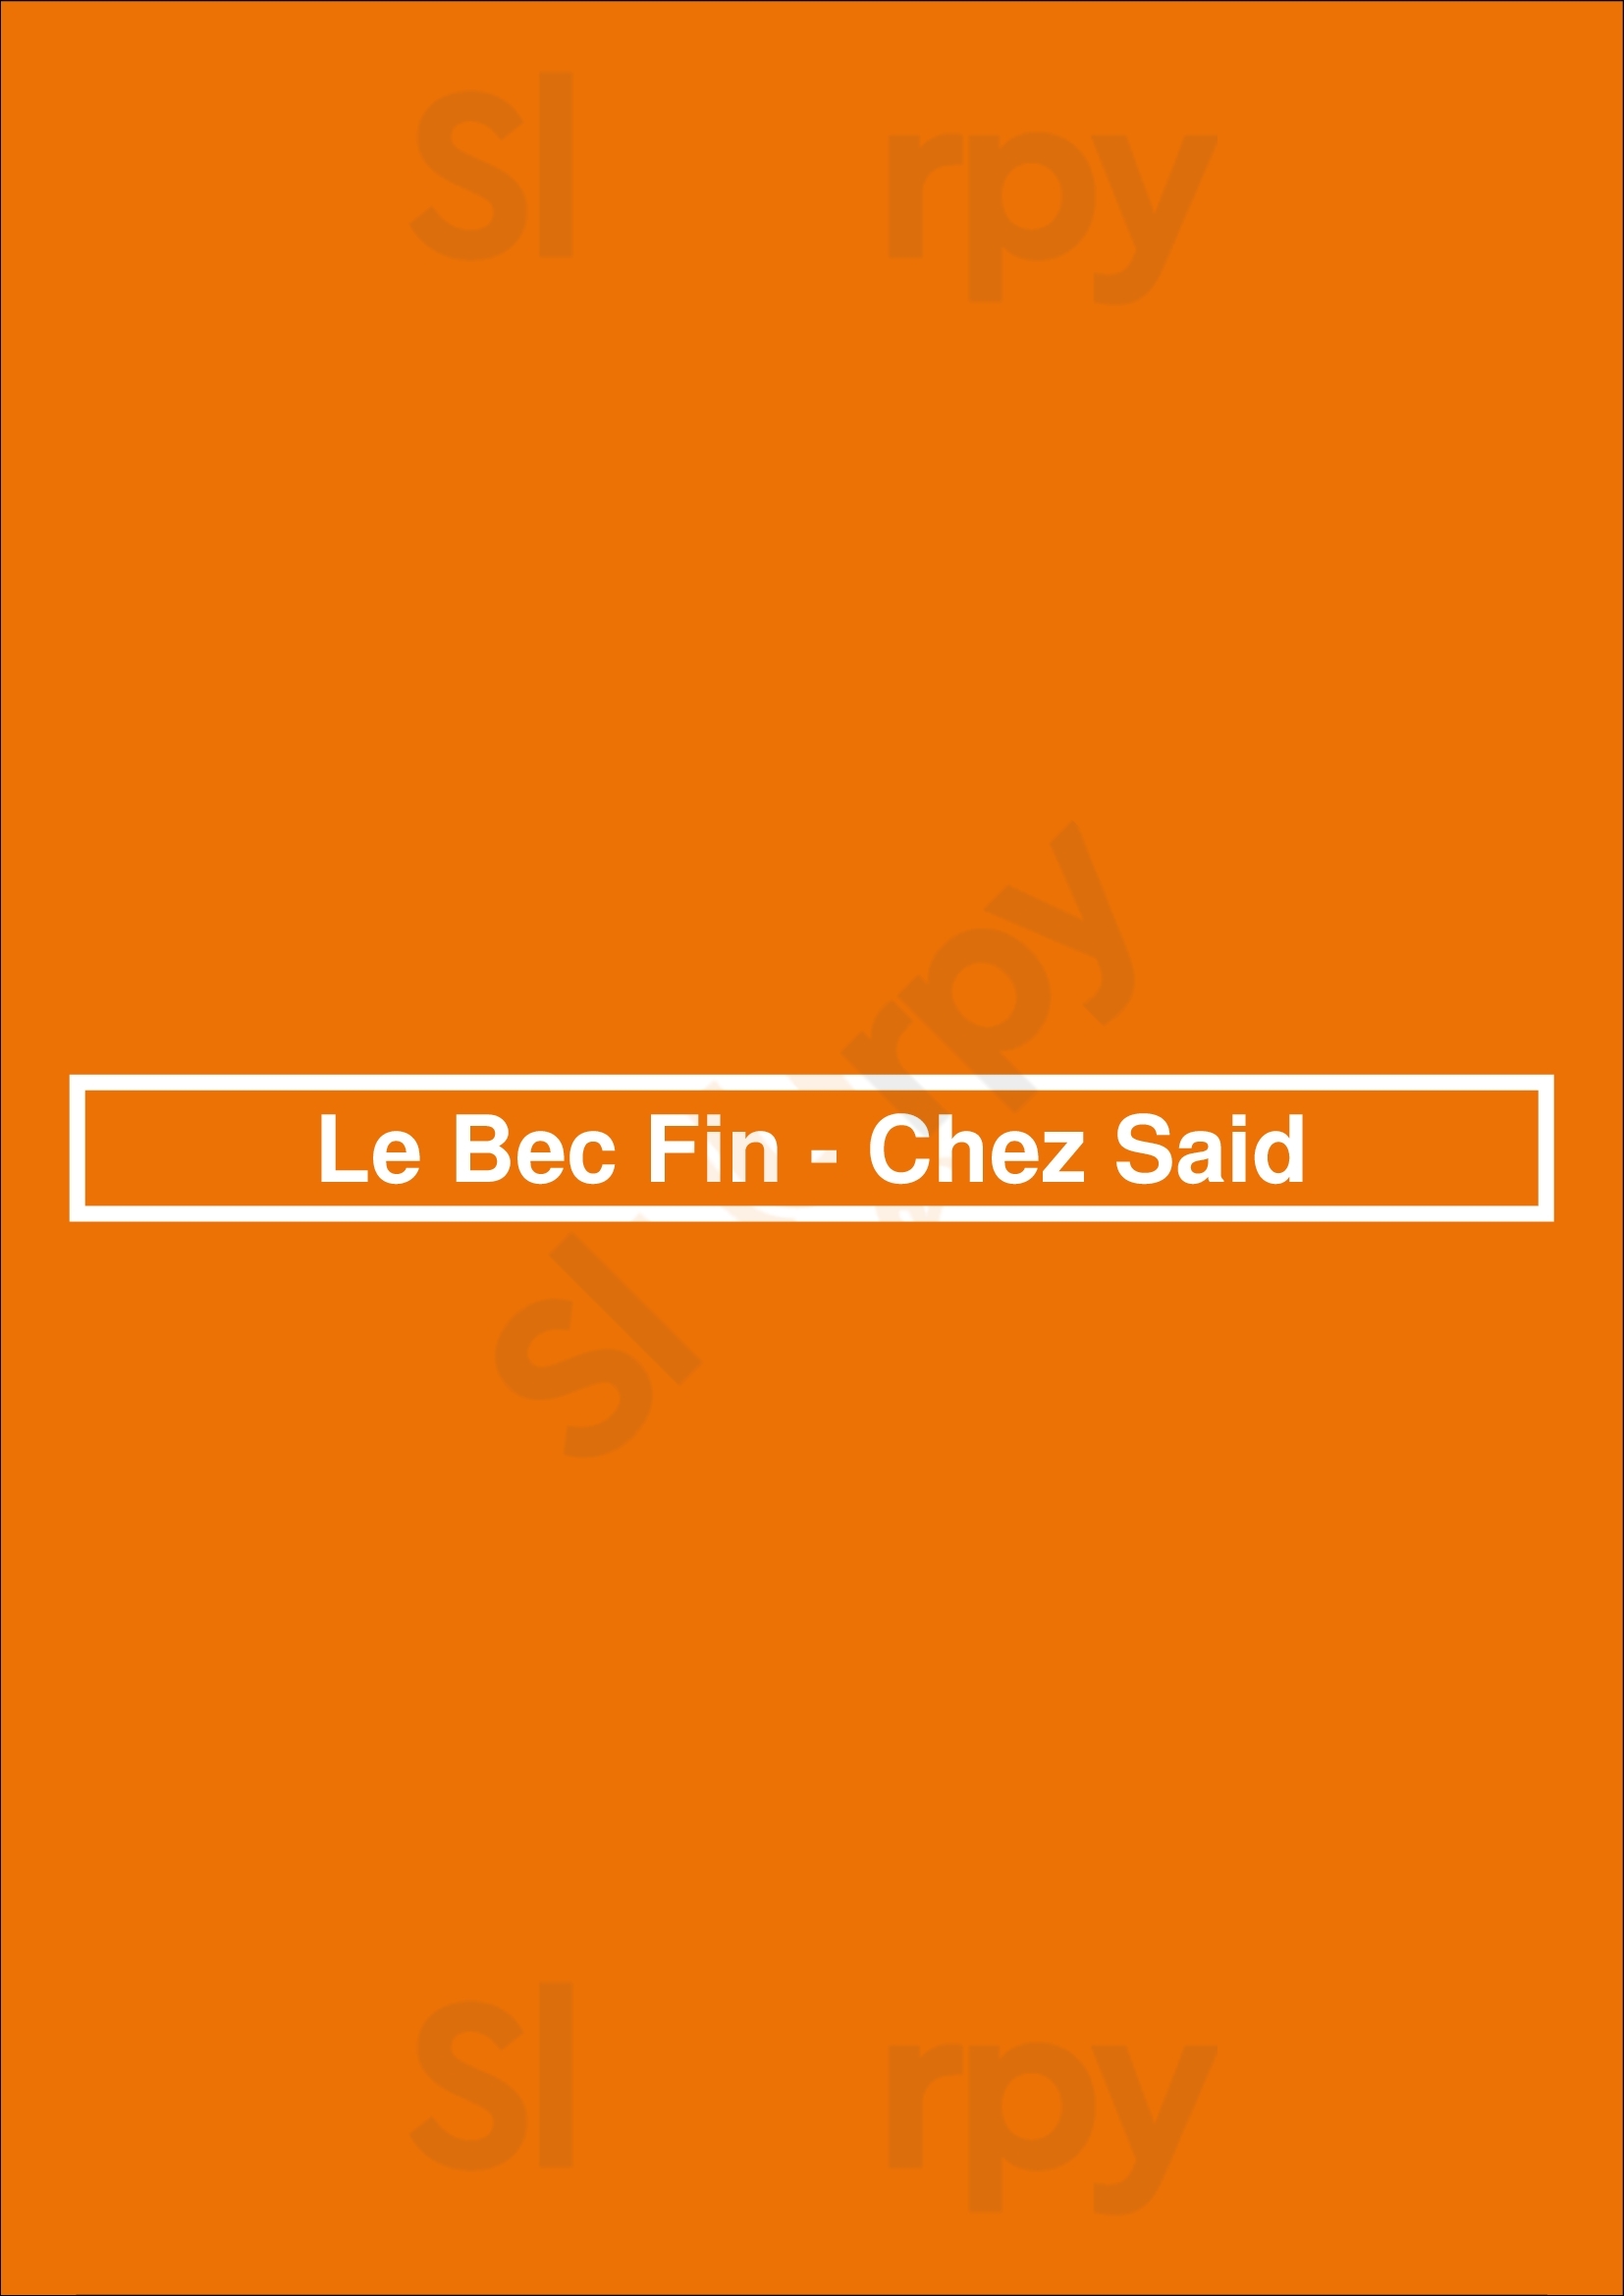 Le Bec Fin - Chez Said Paris Menu - 1